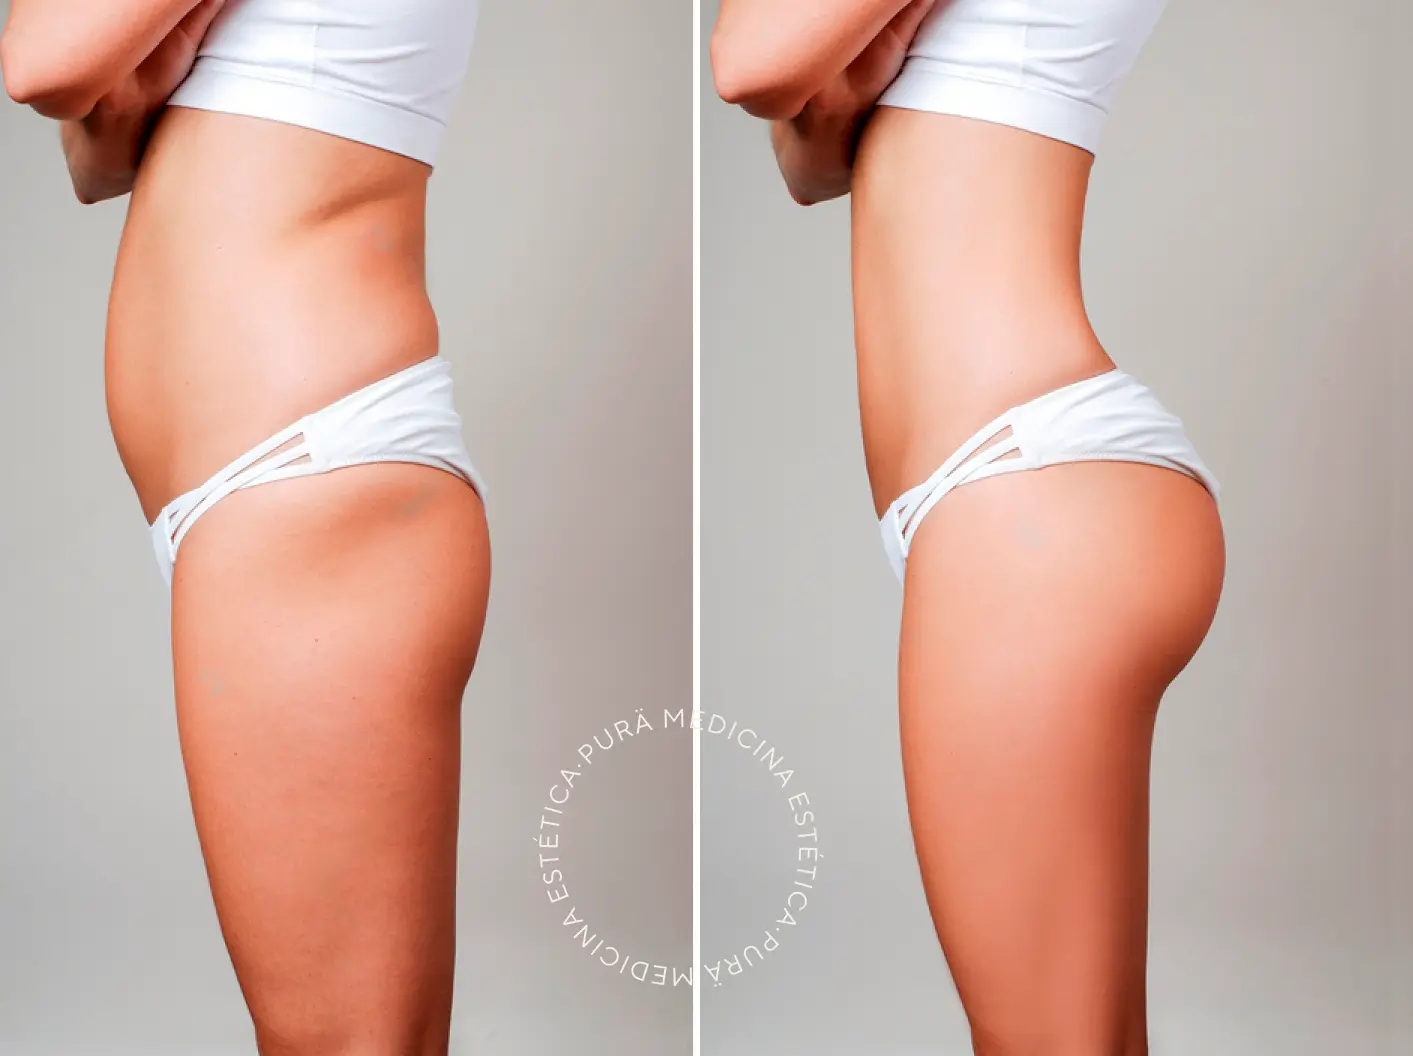 resultados de la carboxiterapia corporal antes y después